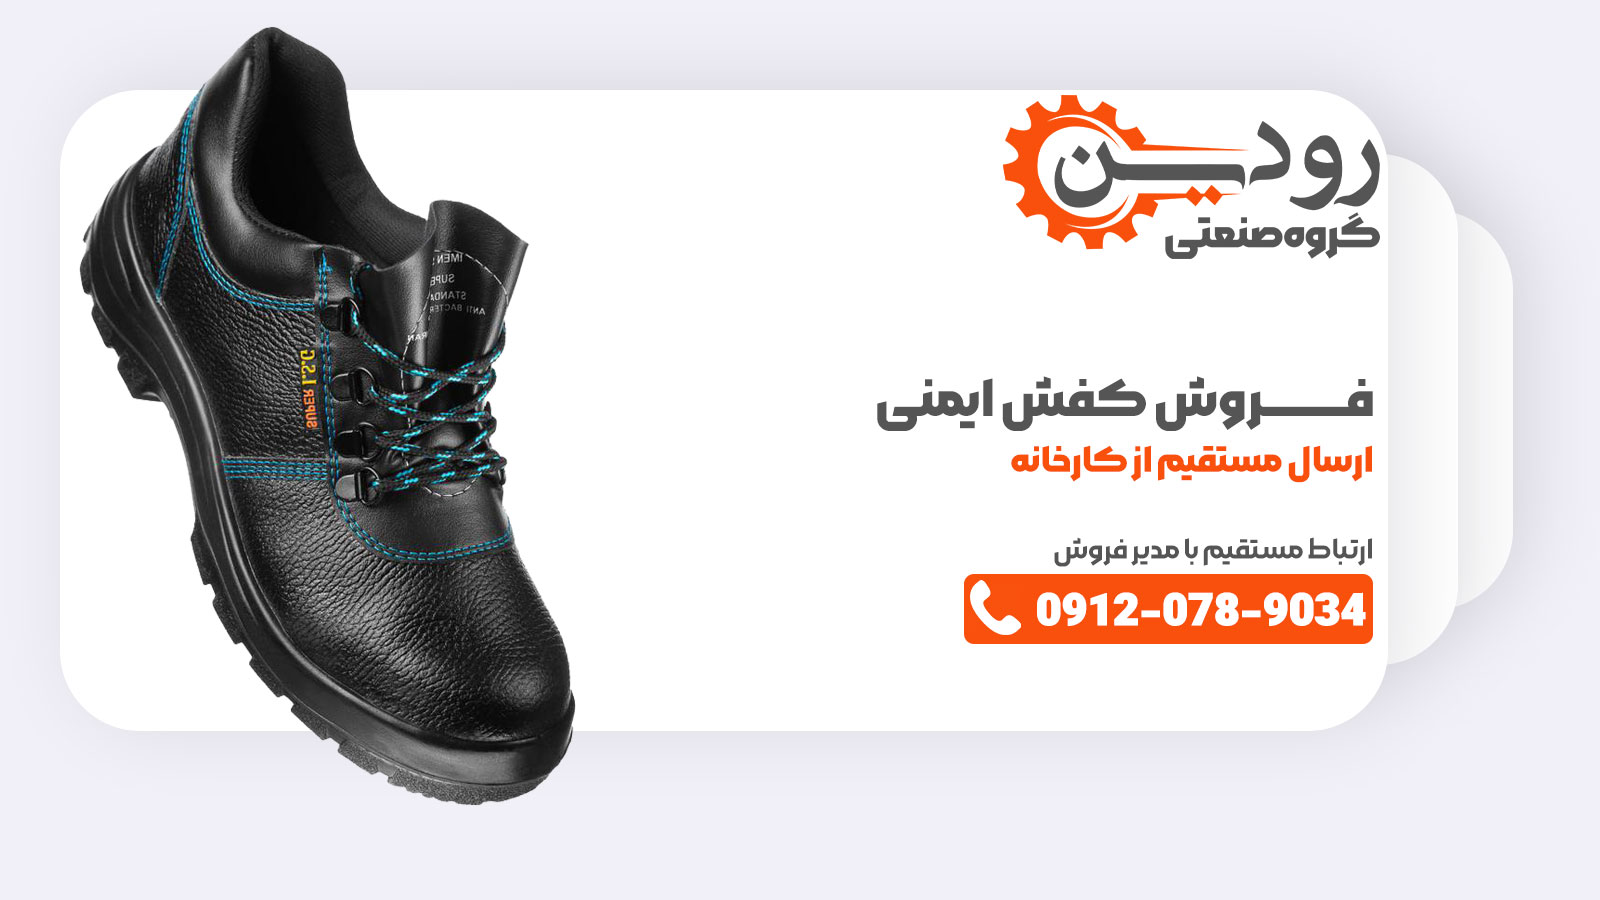 شیراز دارای یک کارخانه تولید کفش ایمنی معتبر می باشد که تمامی مشتریان در استان فارس از آنجا خرید می کنند.